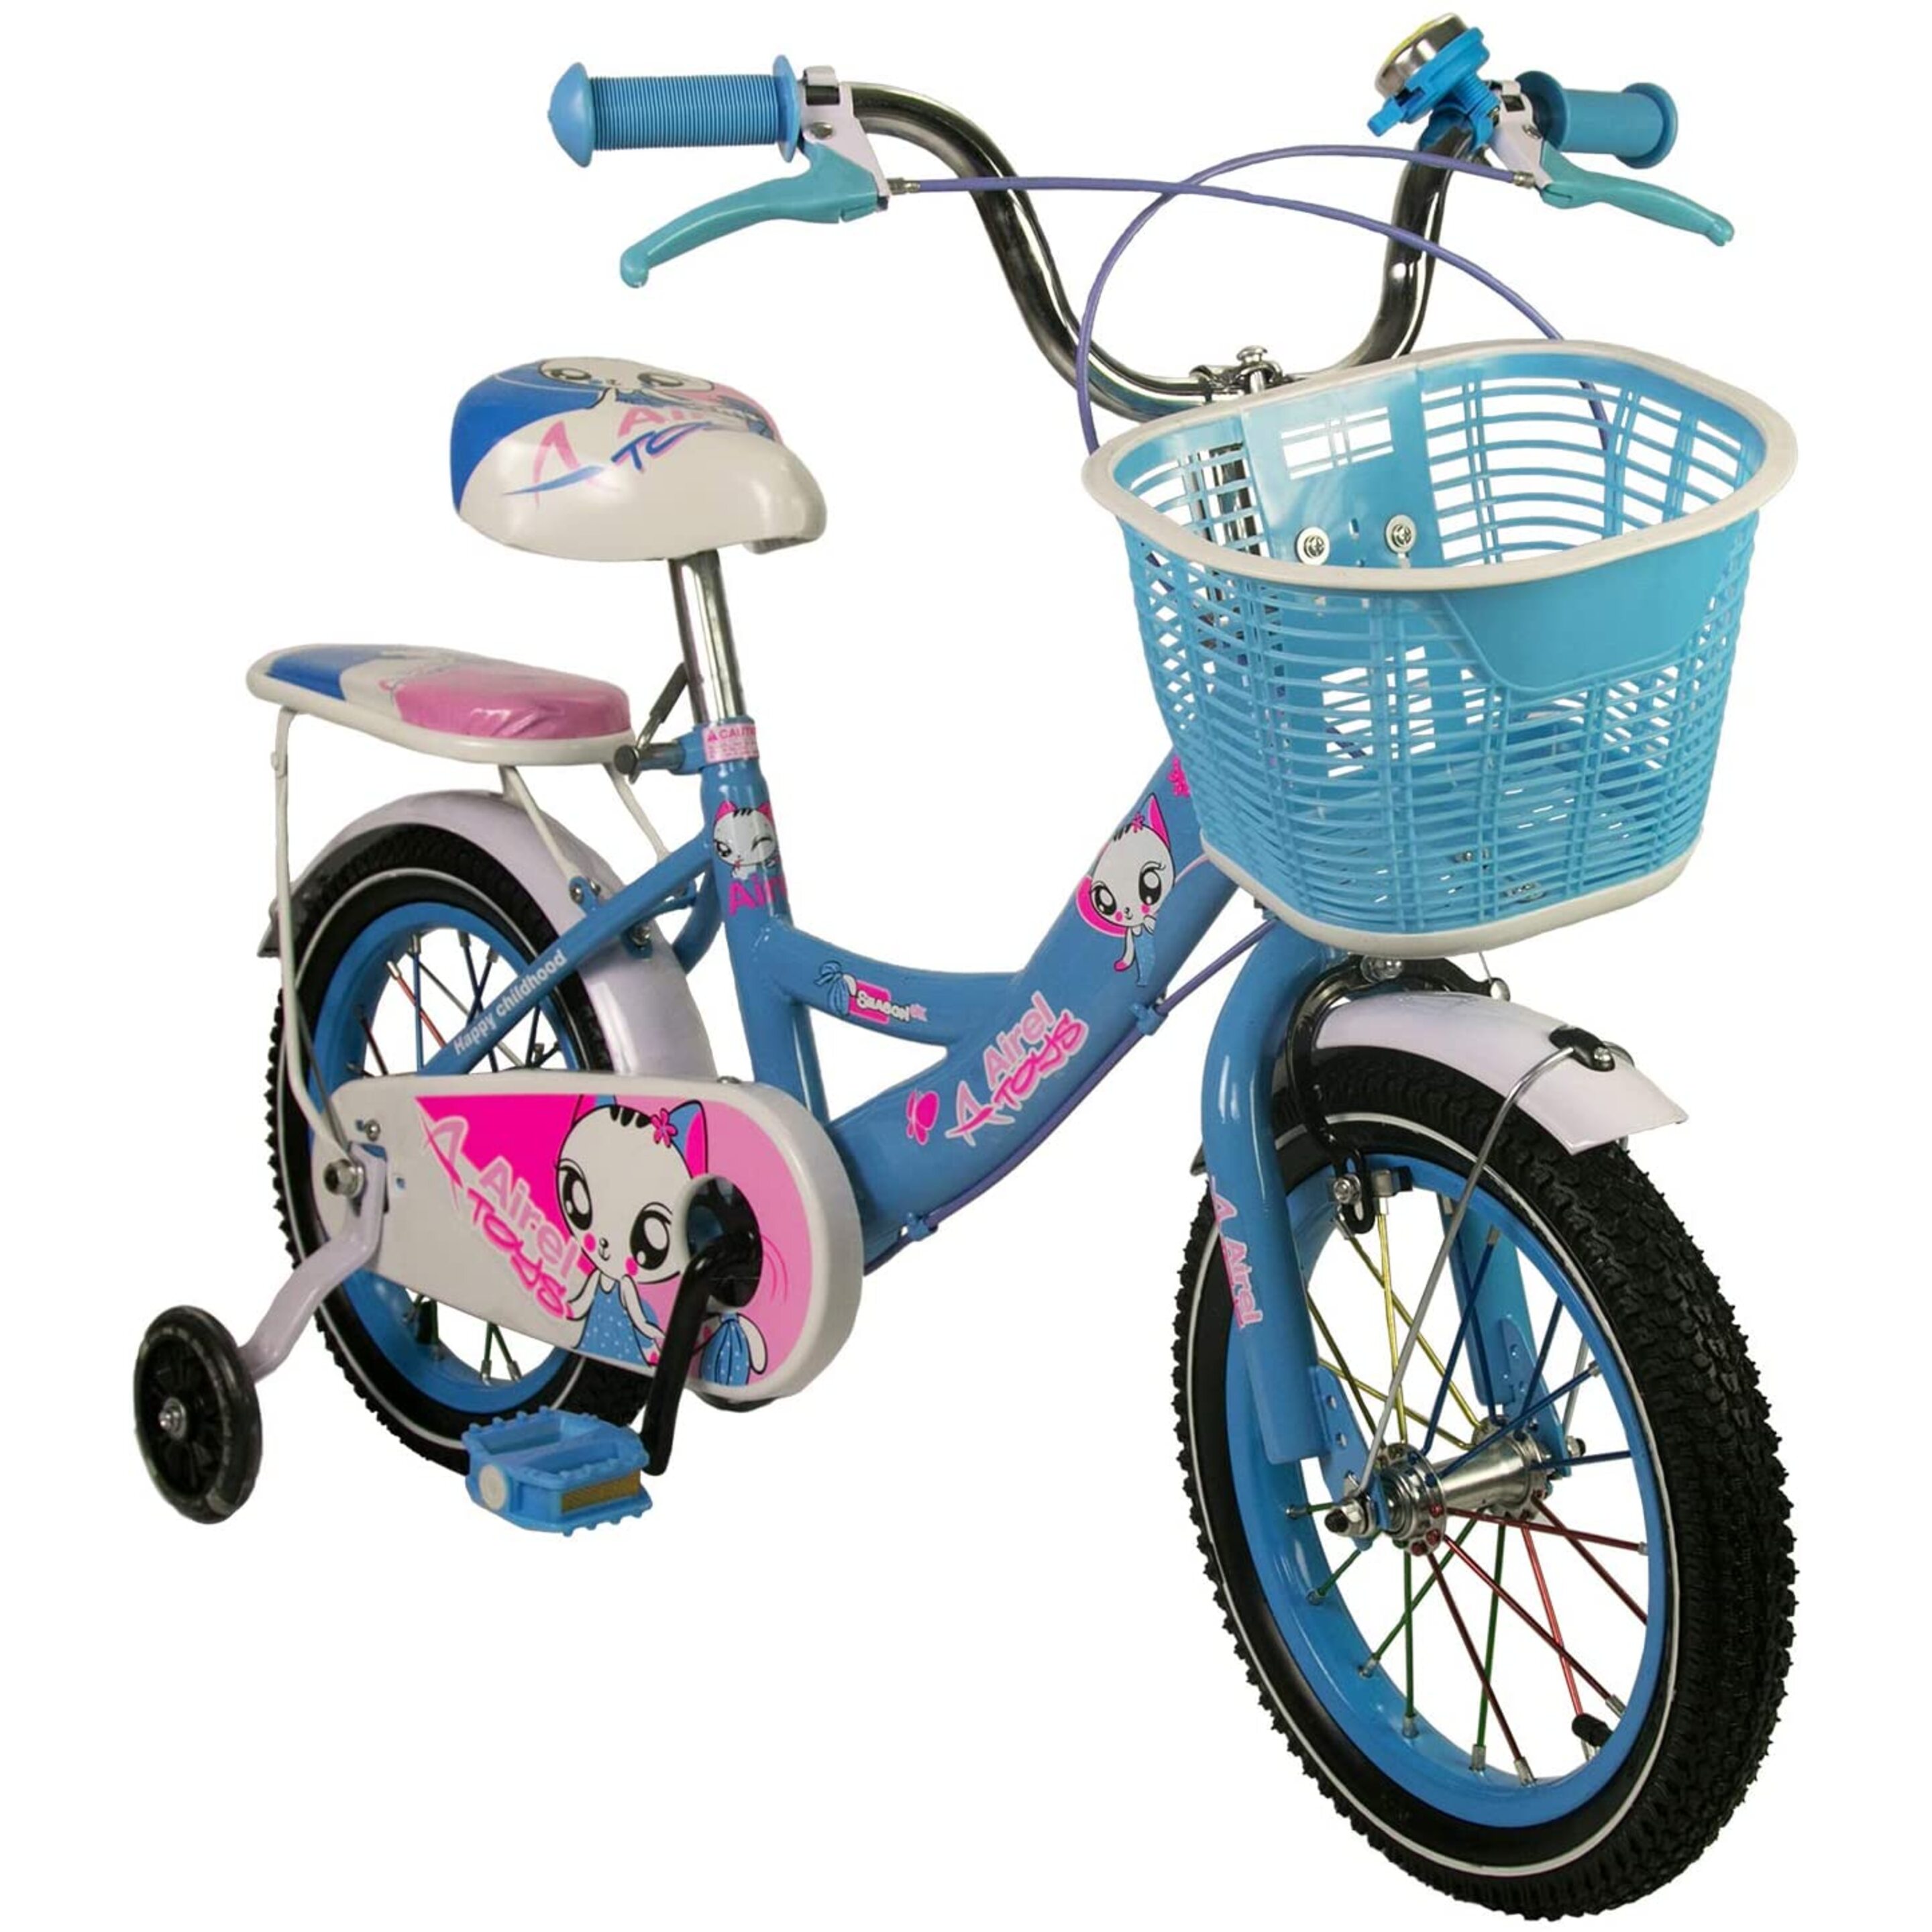 Bici Ruedines-cesta Niñas 3-7 Años Medidas: 88.5x19x44cm Color Azul